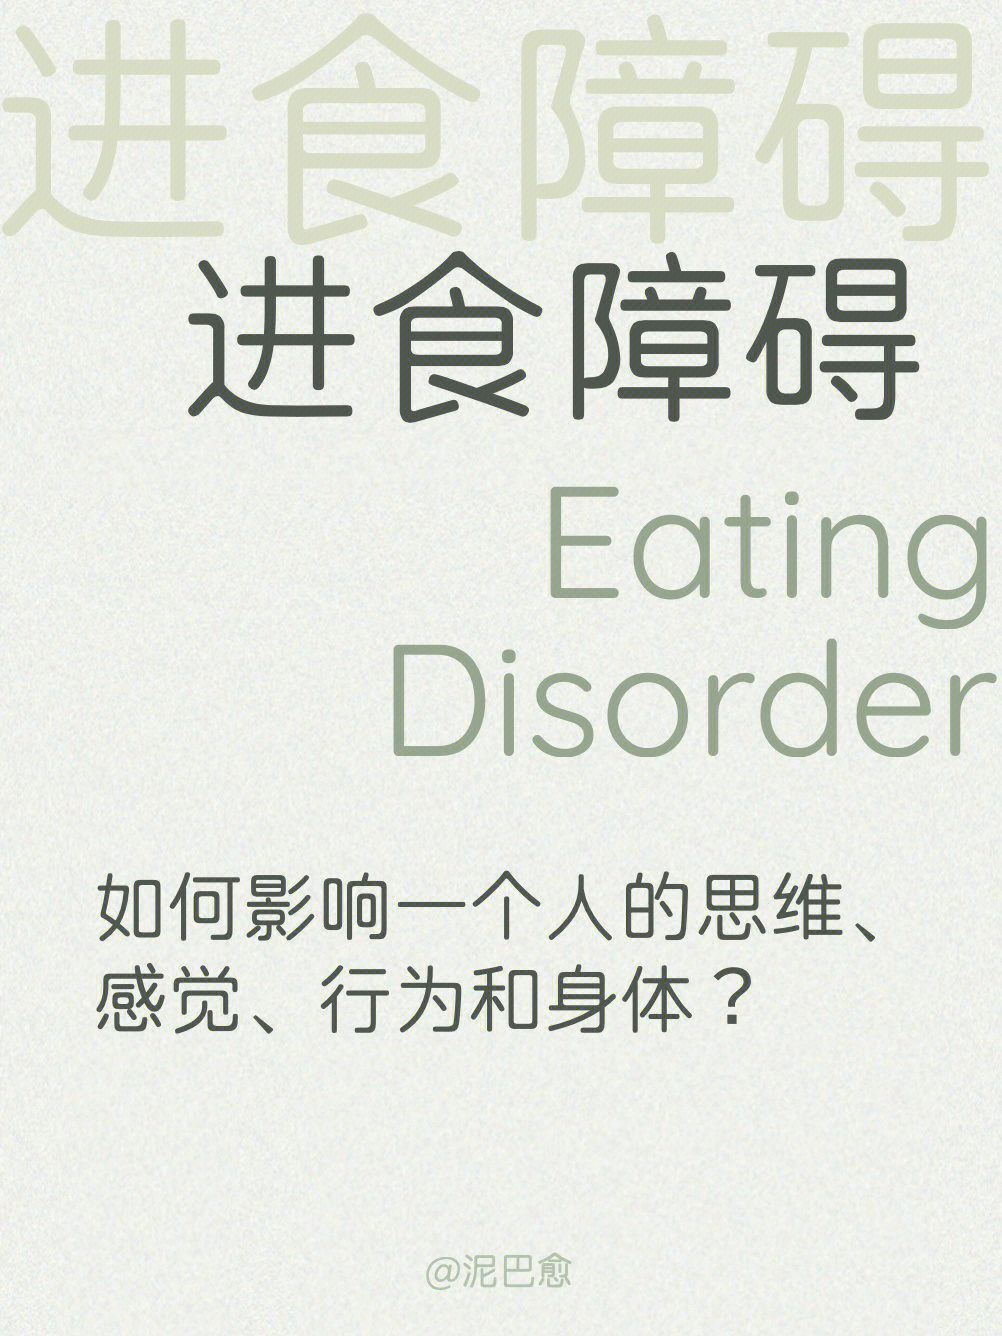 厌食症贪食症暴食症到底什么是进食障碍